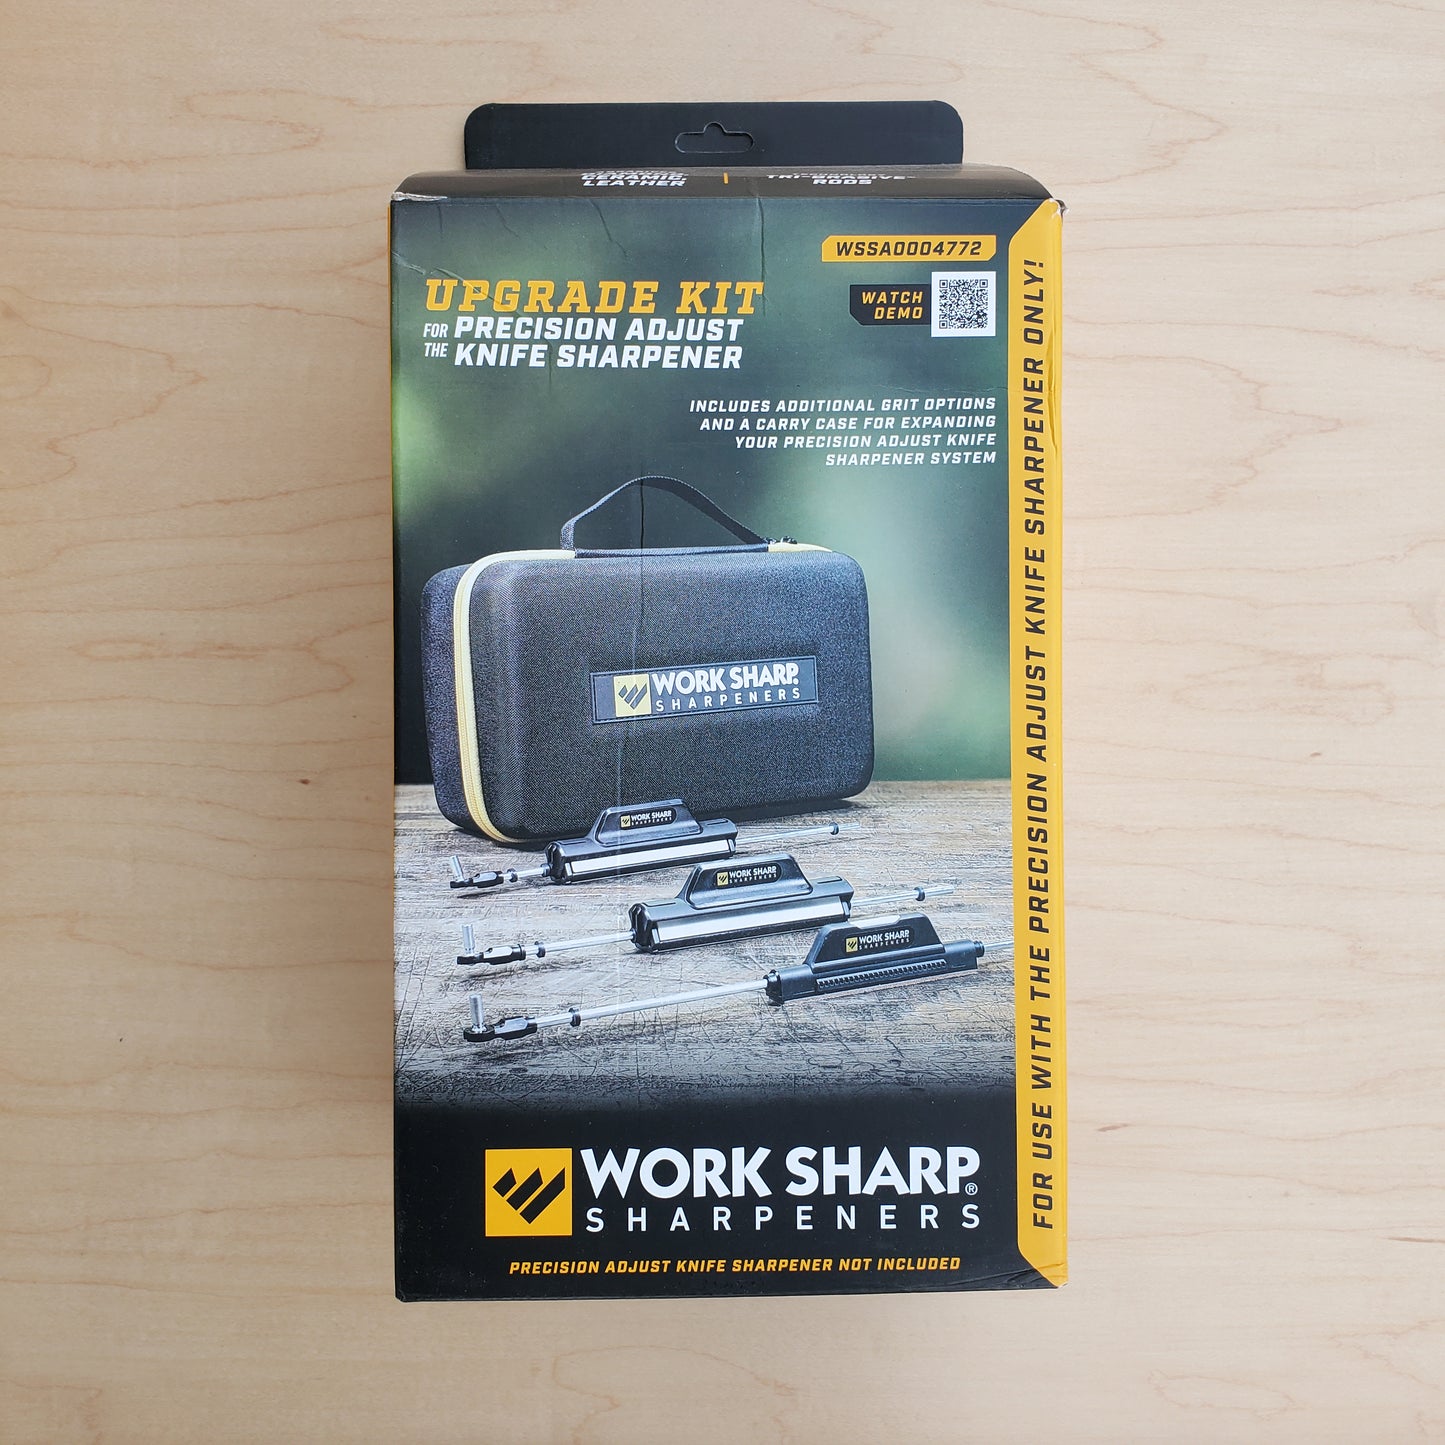 Work Sharp Precision Adjust Upgrade Kit, WSSA0004772